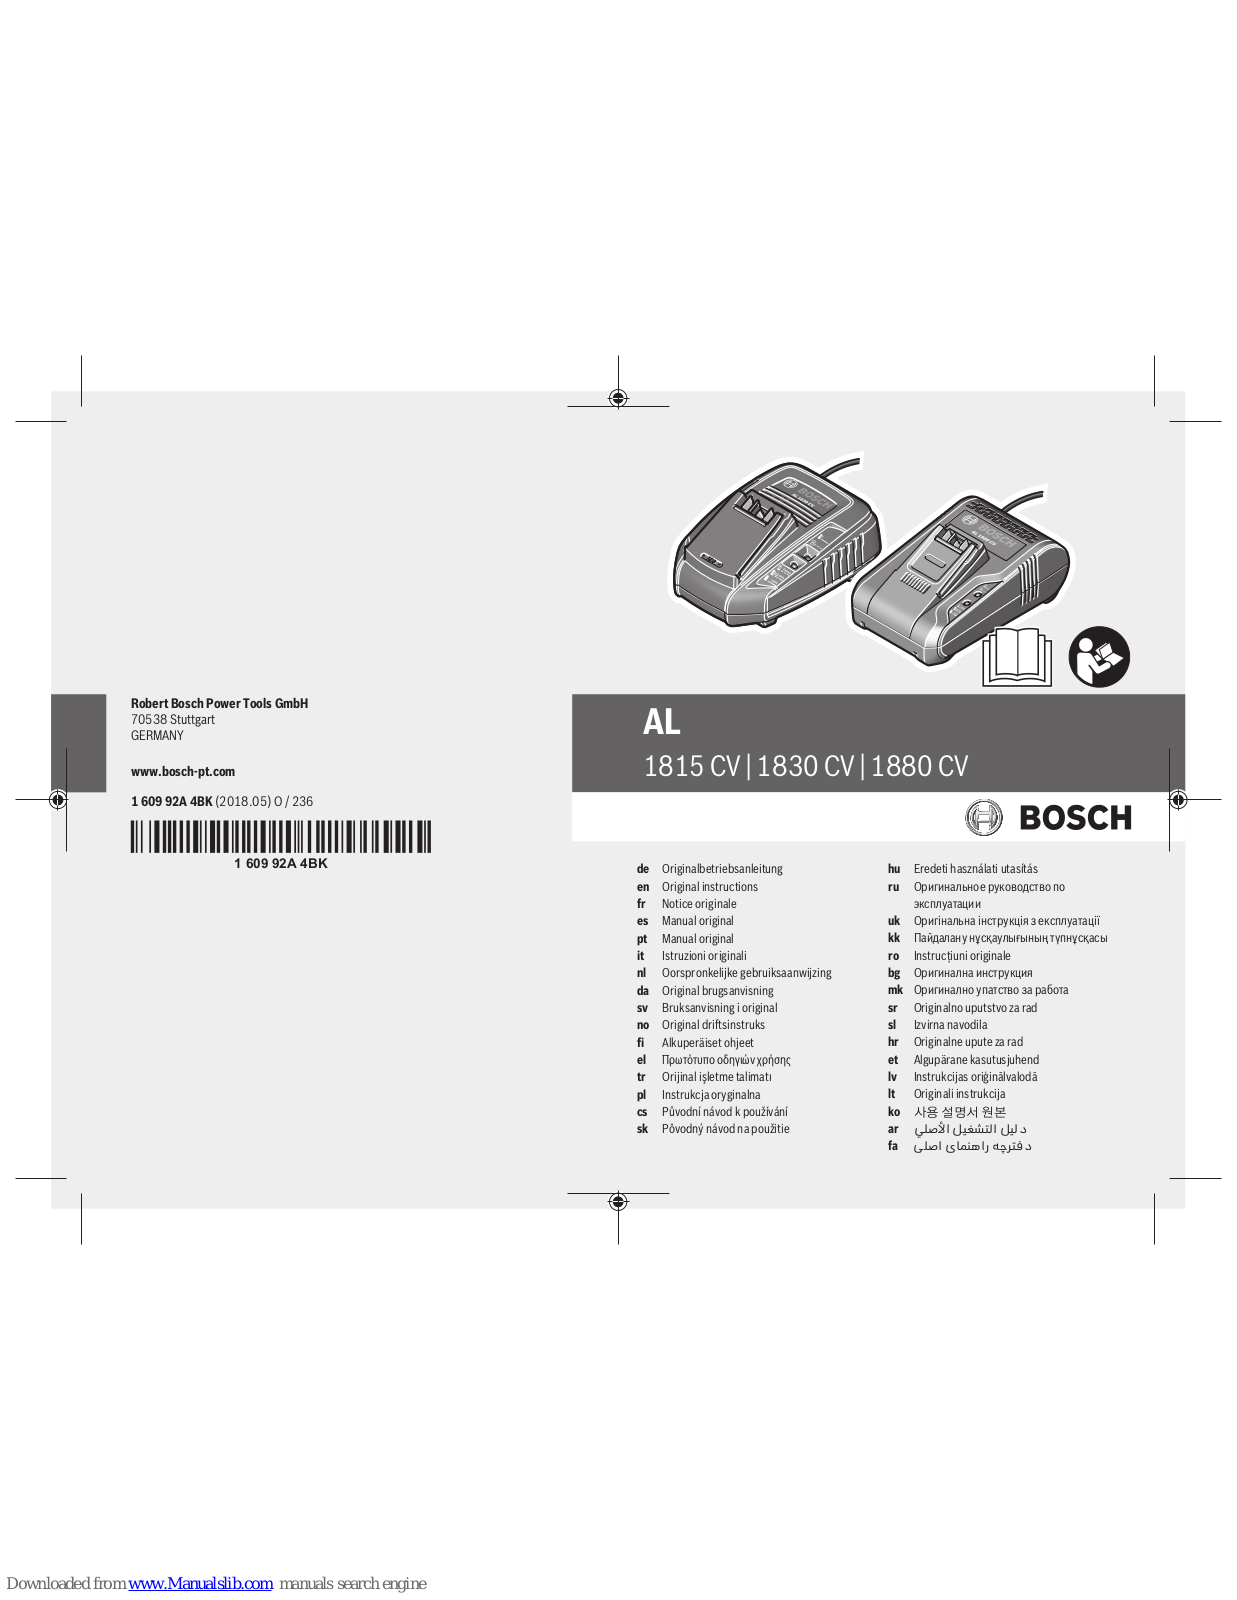 Bosch AL 1815 CV, AL 1830 CV, AL 1880 CV Original Instructions Manual